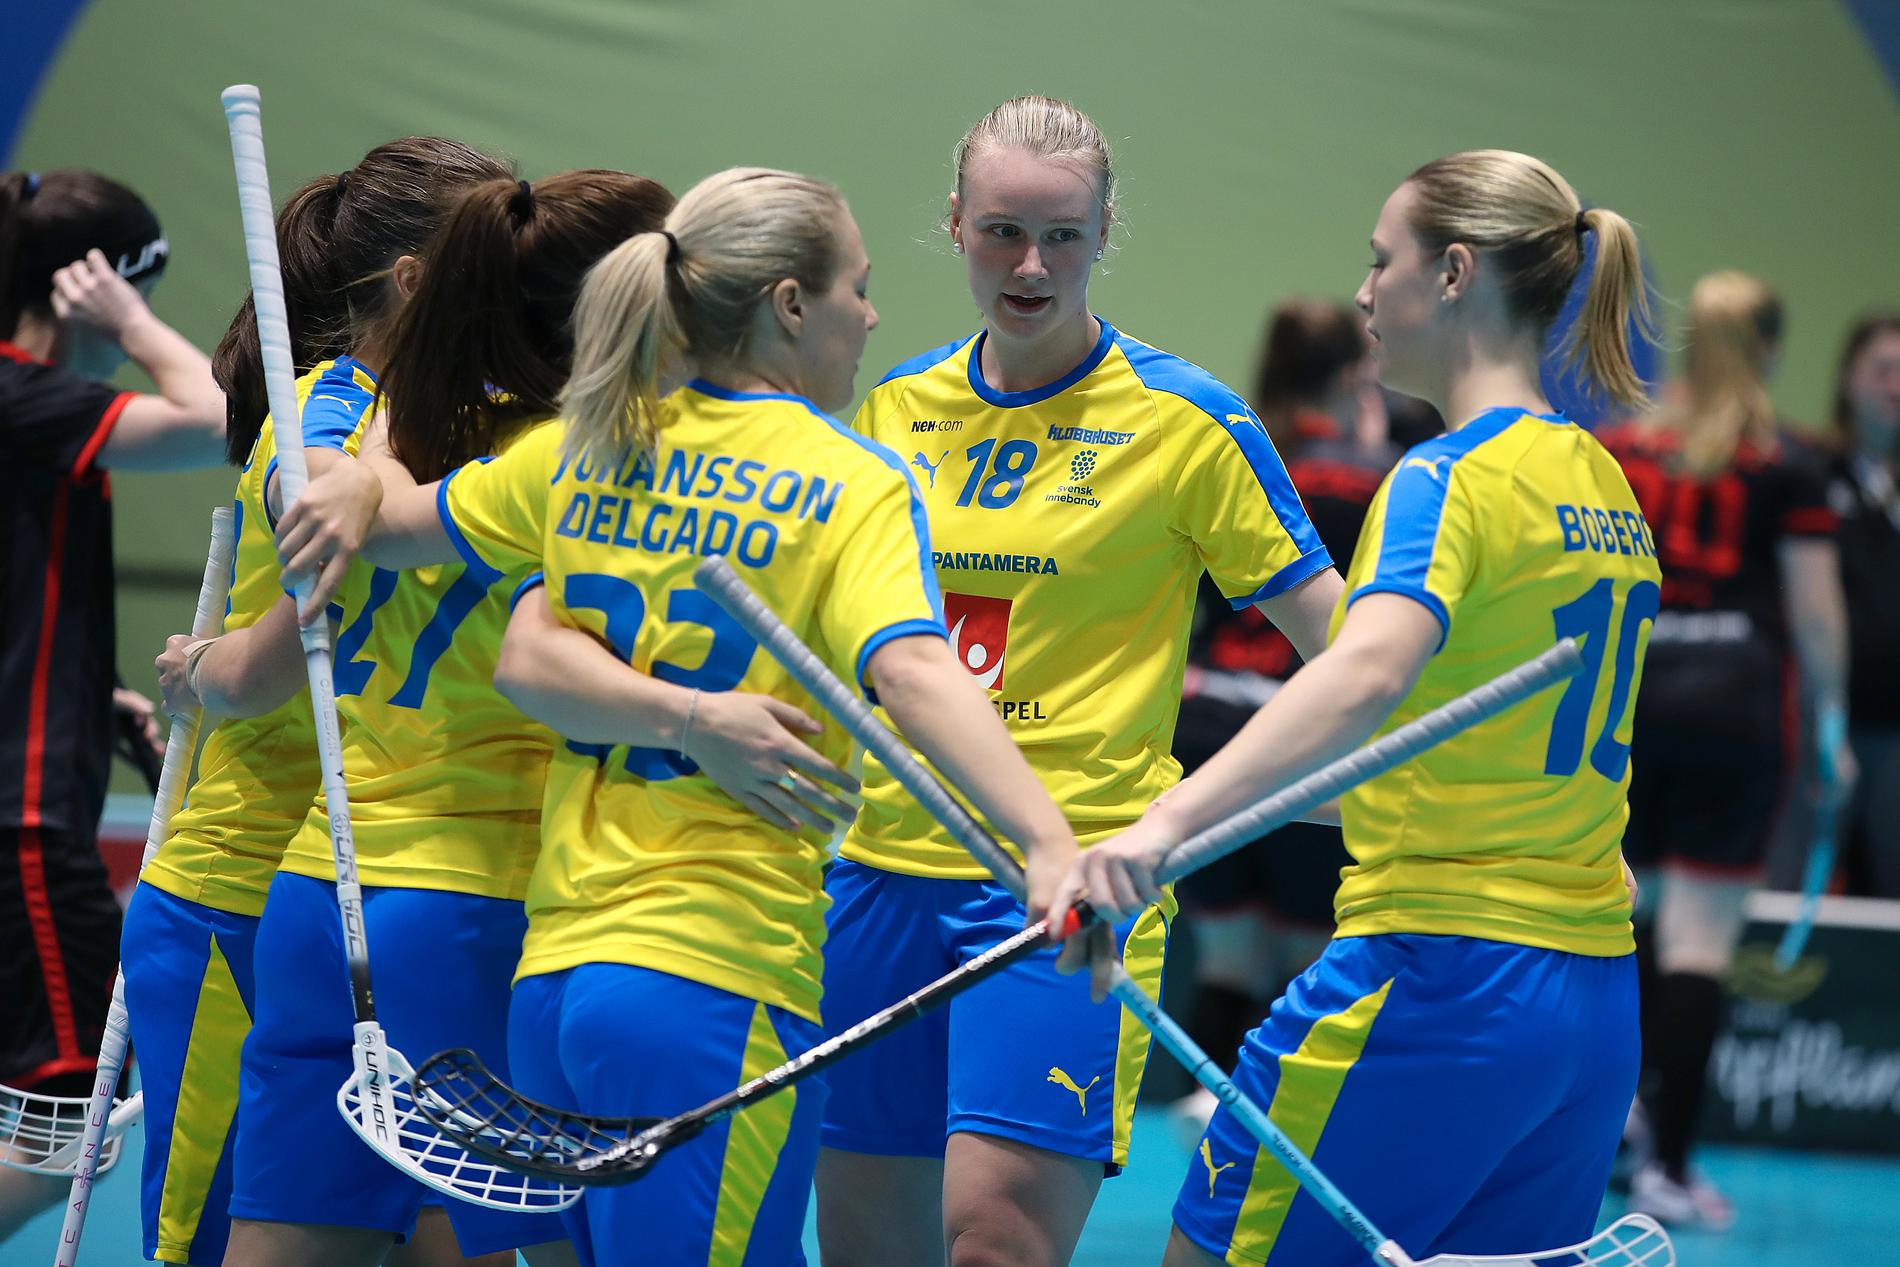 Sverige är klara för sin sjunde raka VM-final efter seger i semin mot Finland.